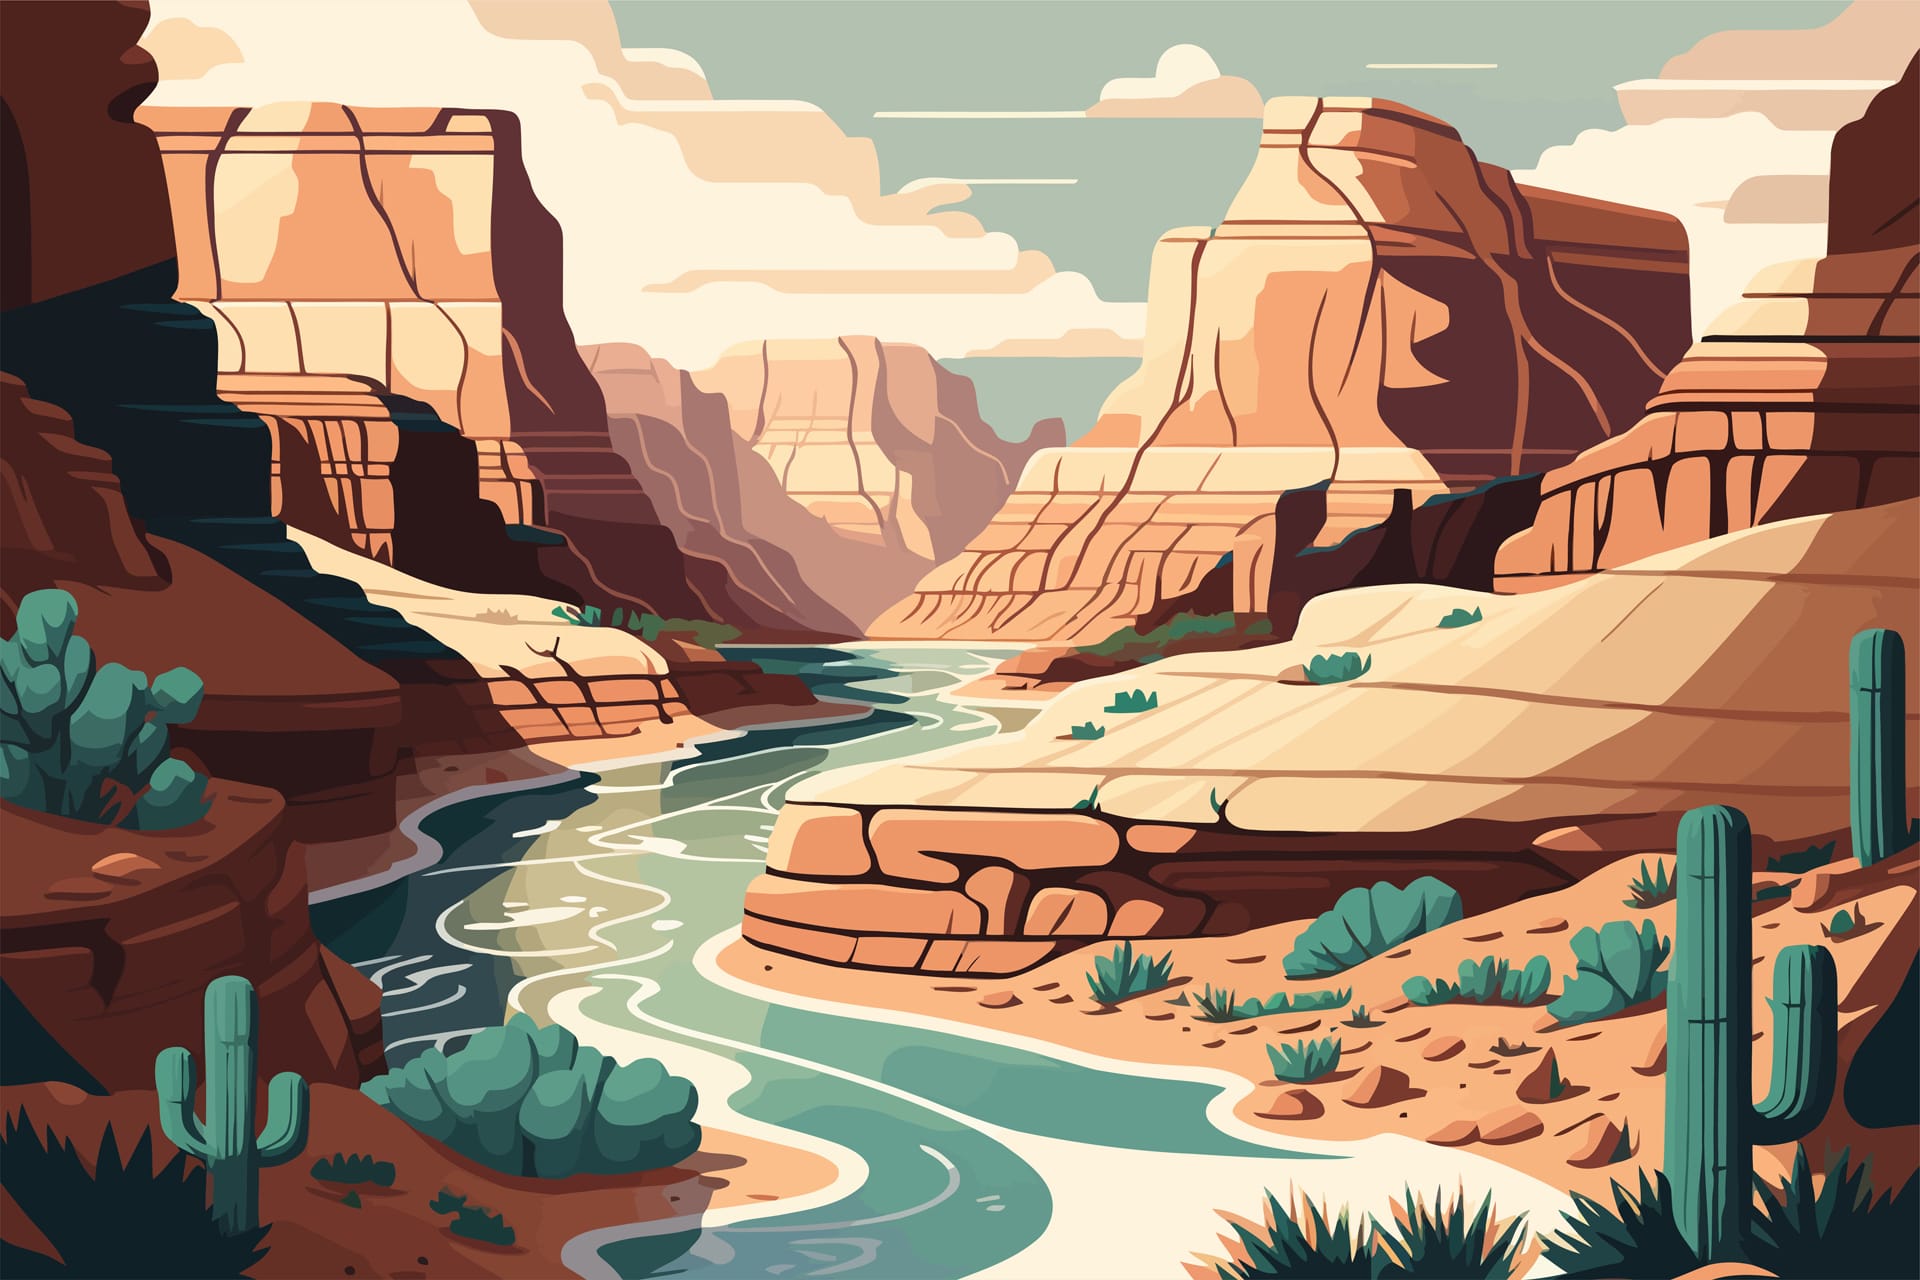 Desert landscape with river cactuses illustration